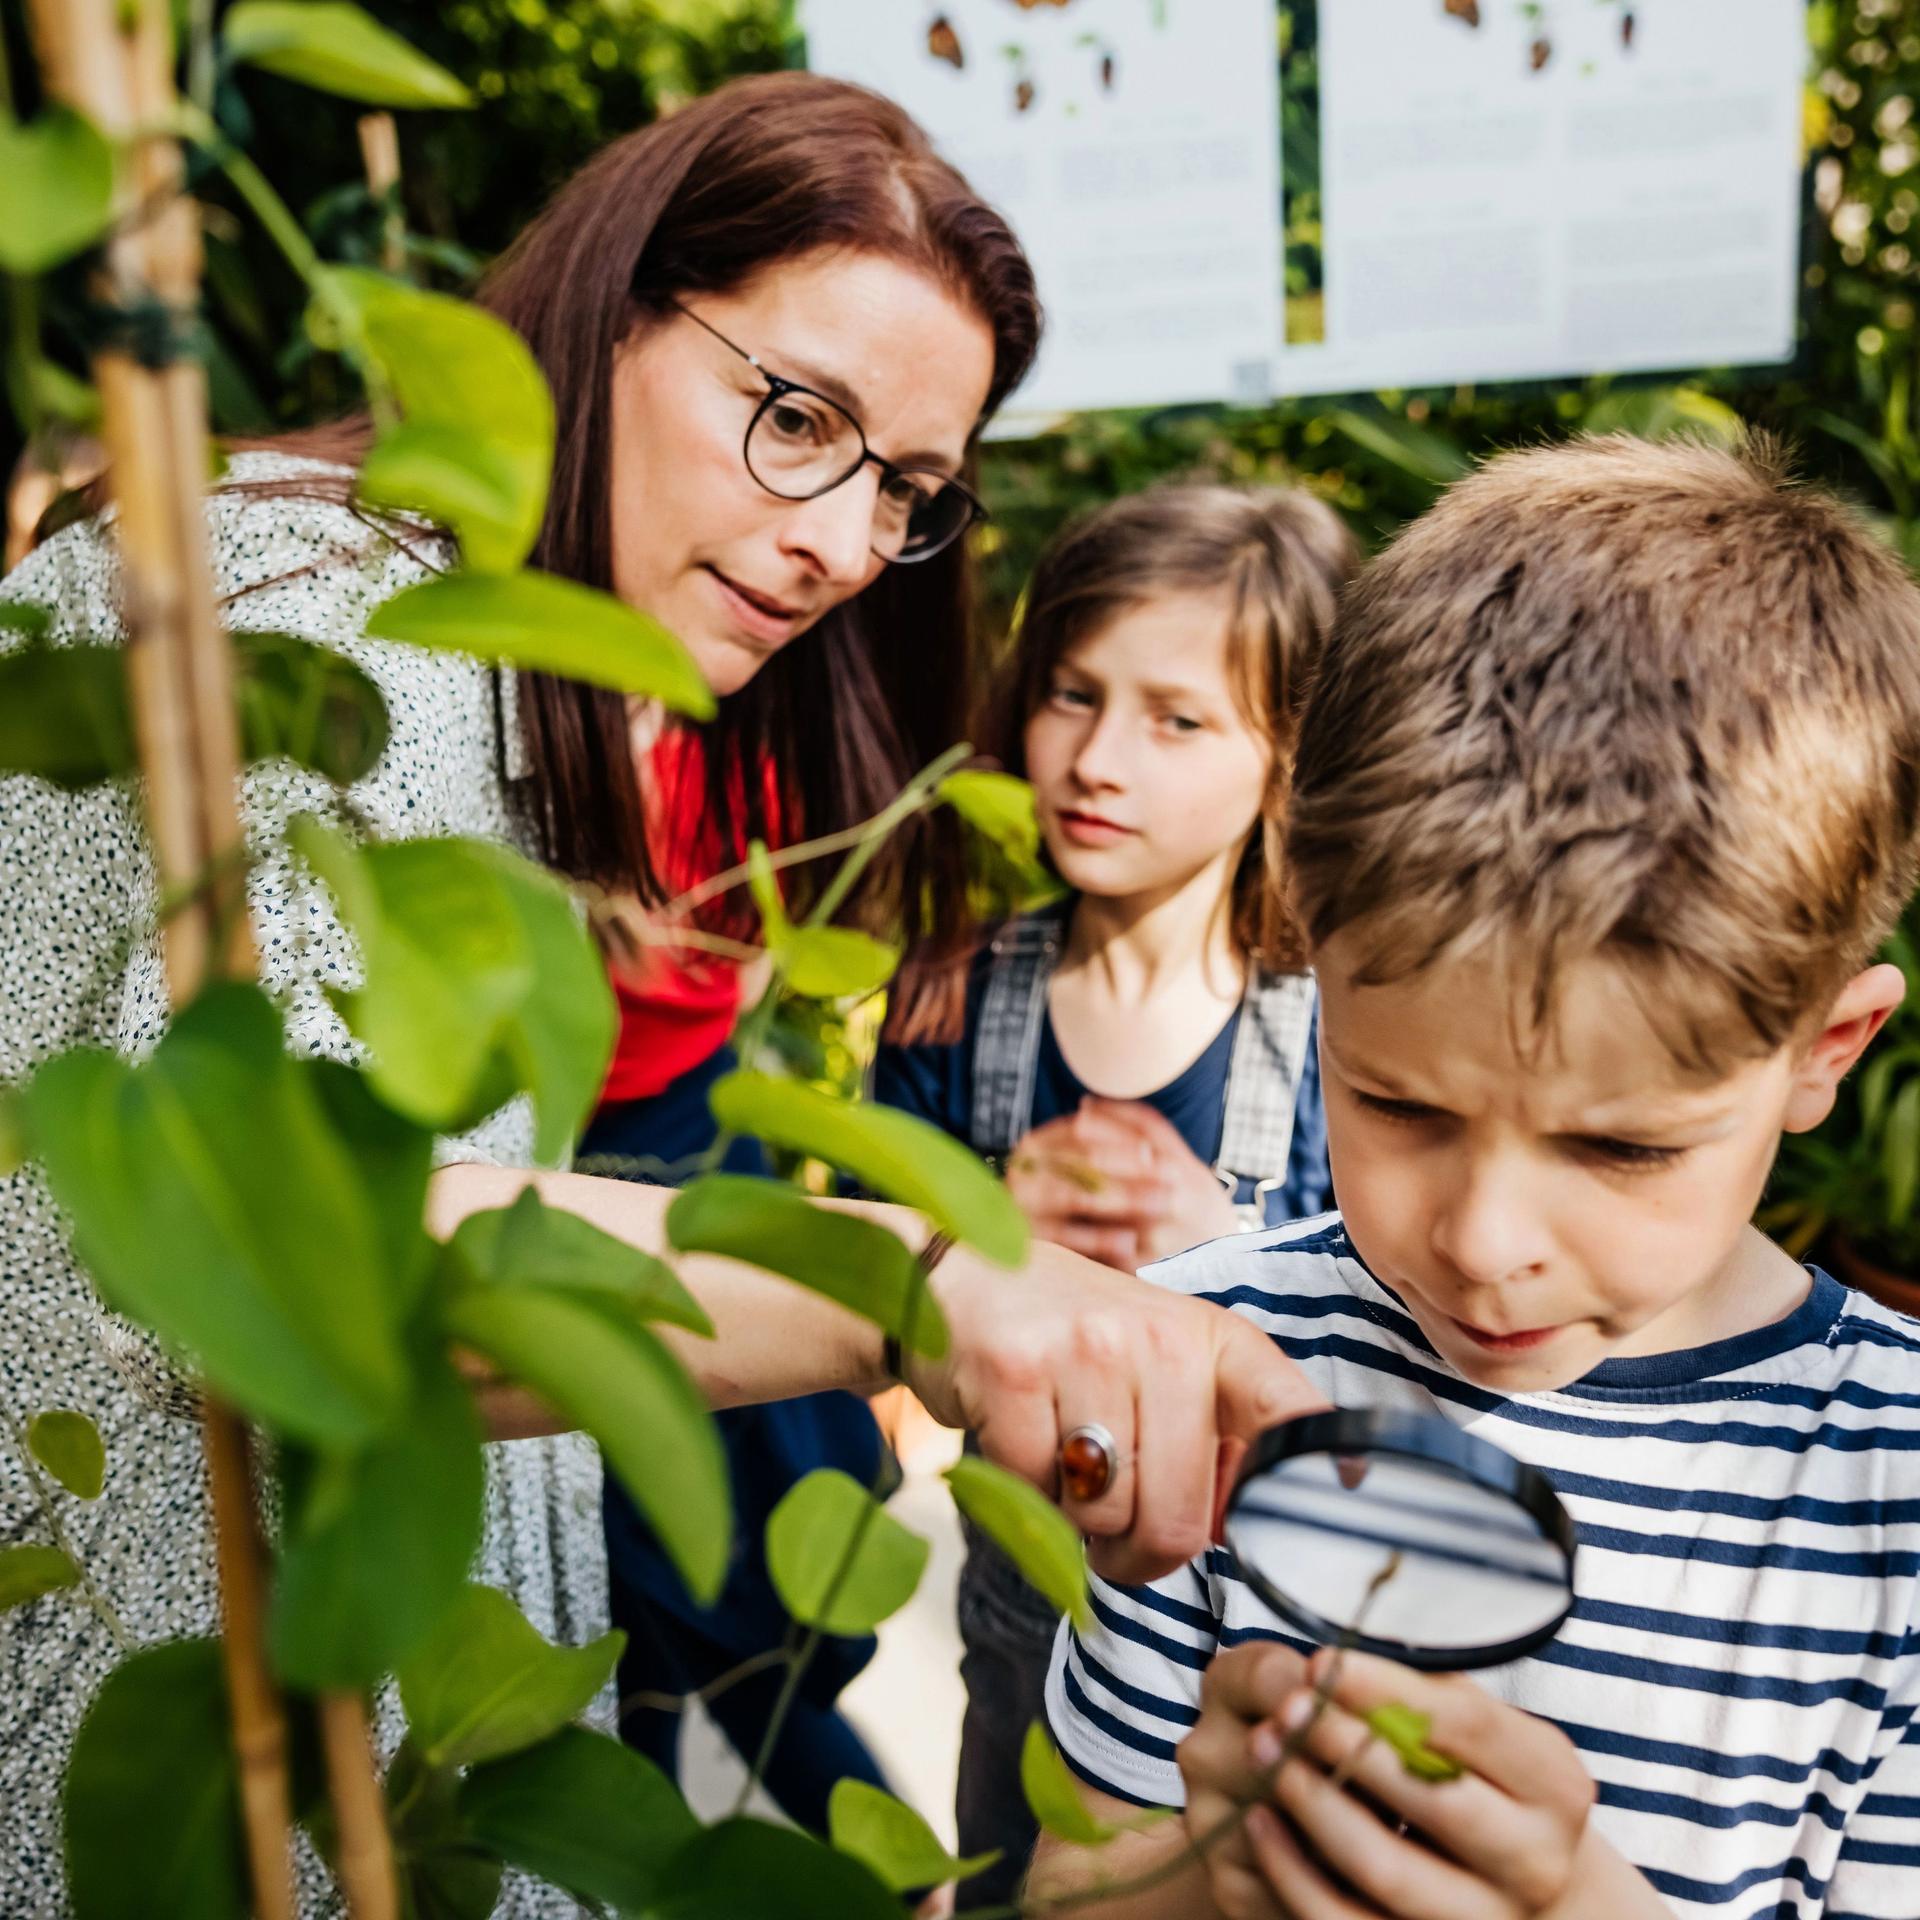 Eine Lehrerin steht mit ihren Schülern in einem Garten und schaut sich die Pflanzen genau an.